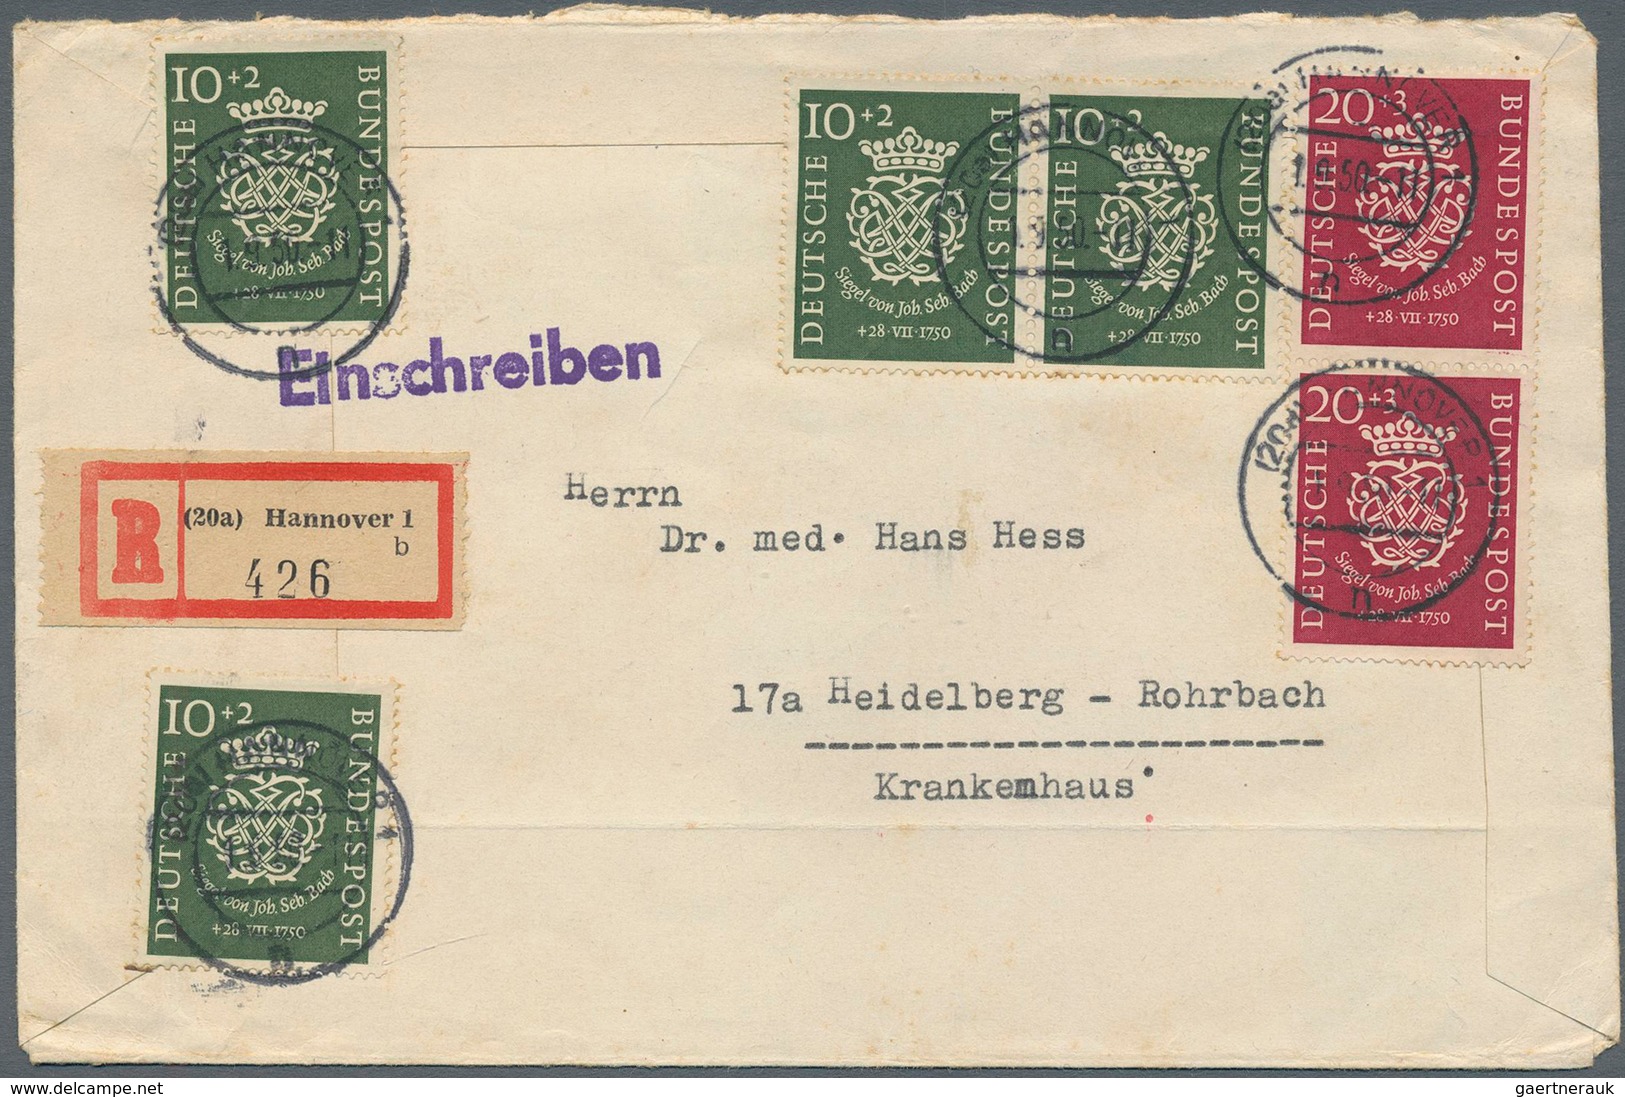 Berlin: 1949/56, nette Partie von 8 Belegen, teils FDC, darunter 113-15 FDC, 123/125/132 FDC, 116 FD